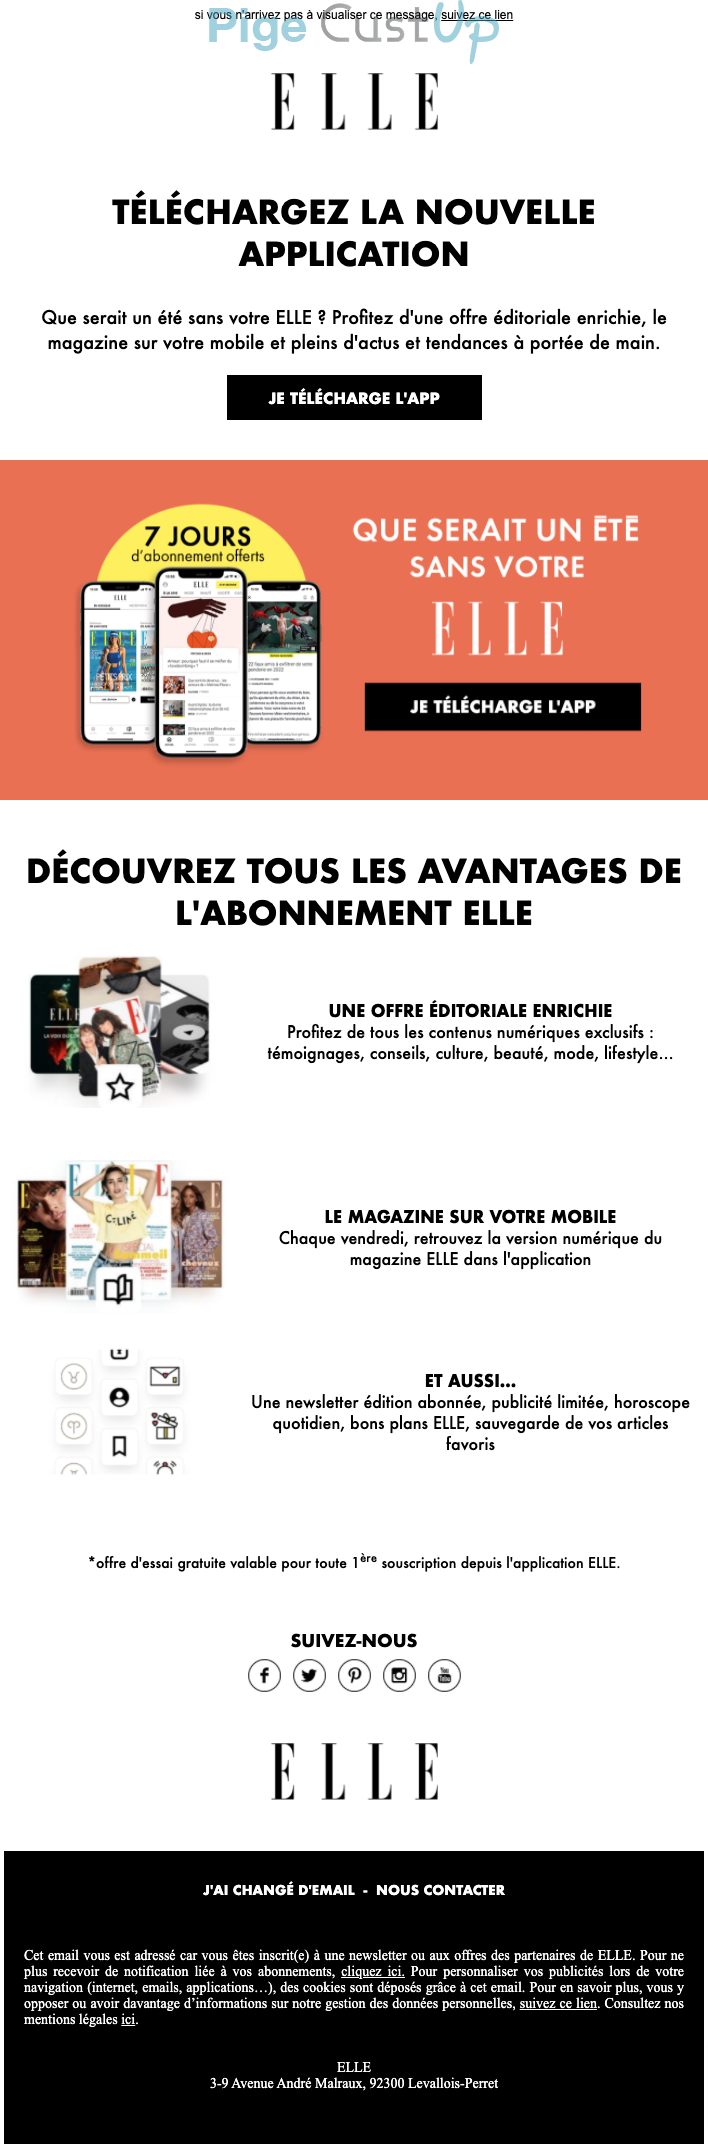 Exemple de Type de media  e-mailing - Elle - Marketing marque - Nouveau canal